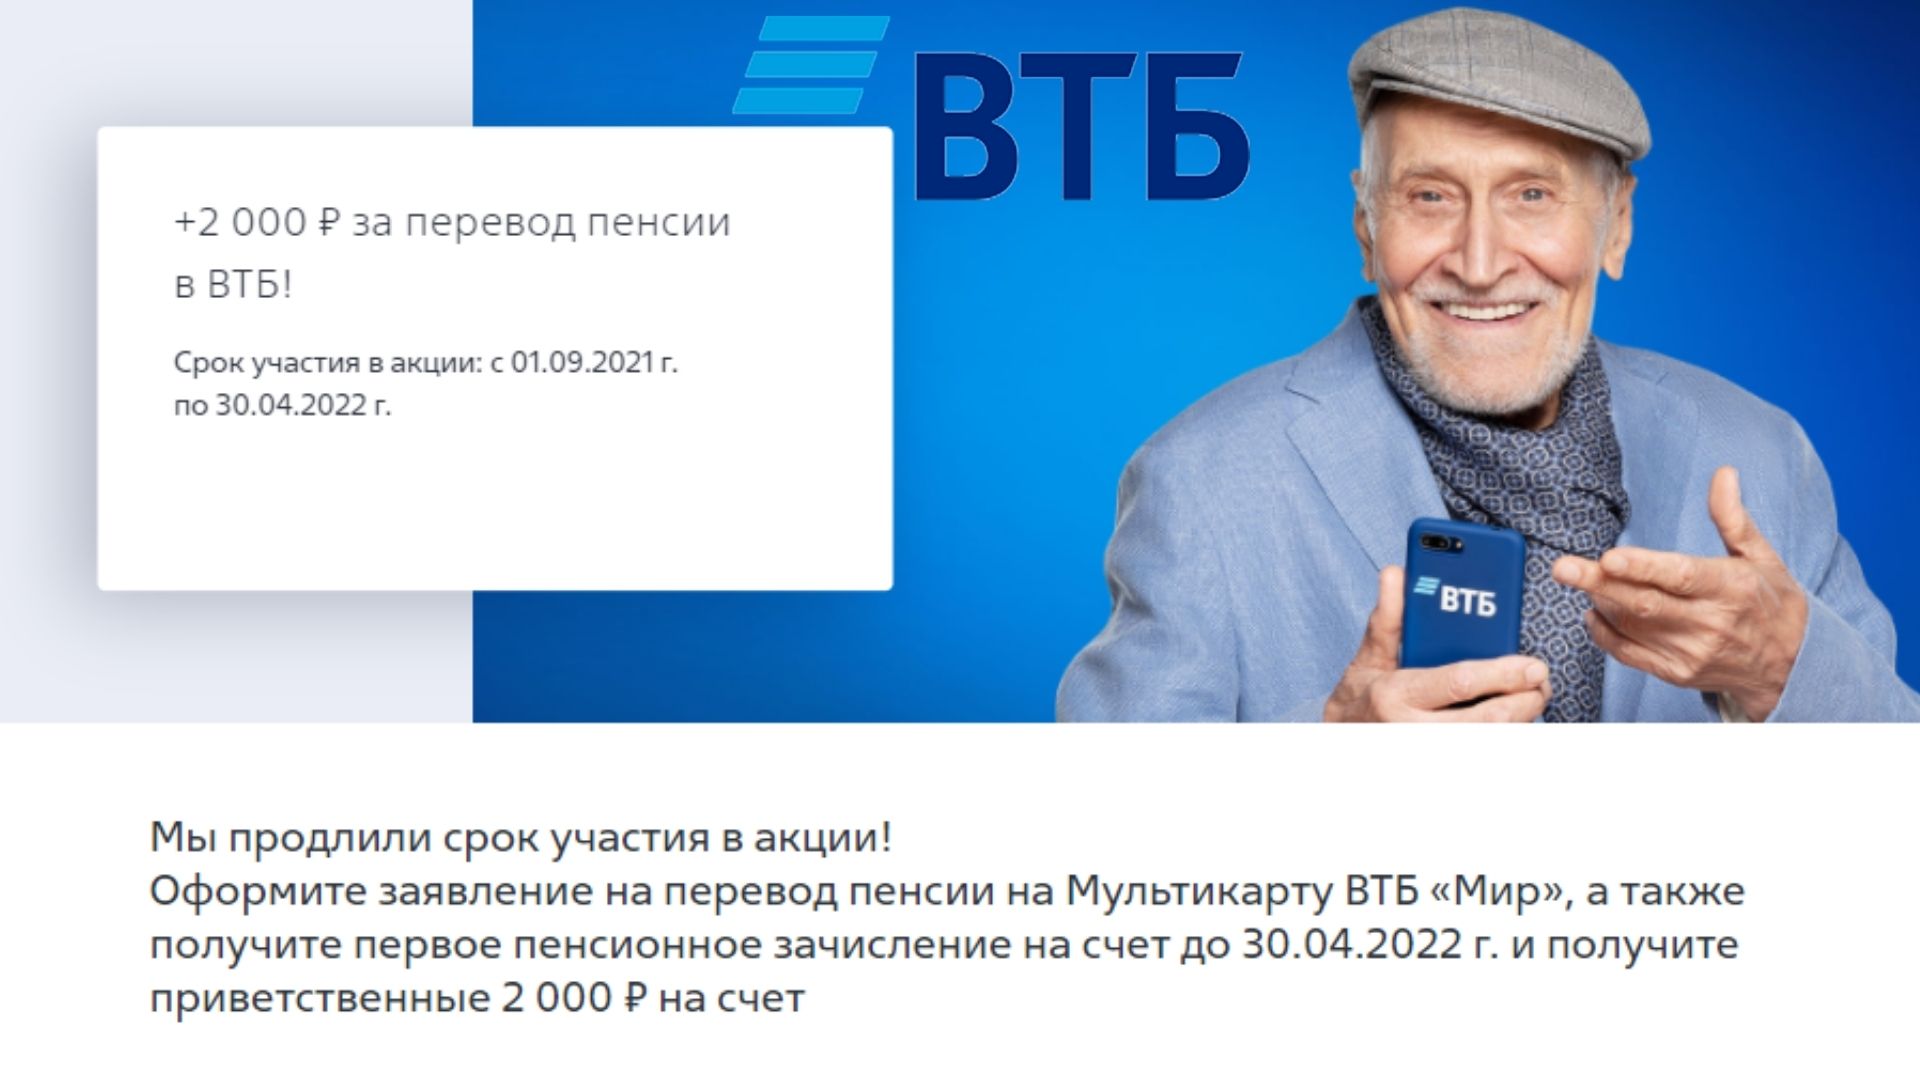 Втб для пенсионеров на сегодня в рублях